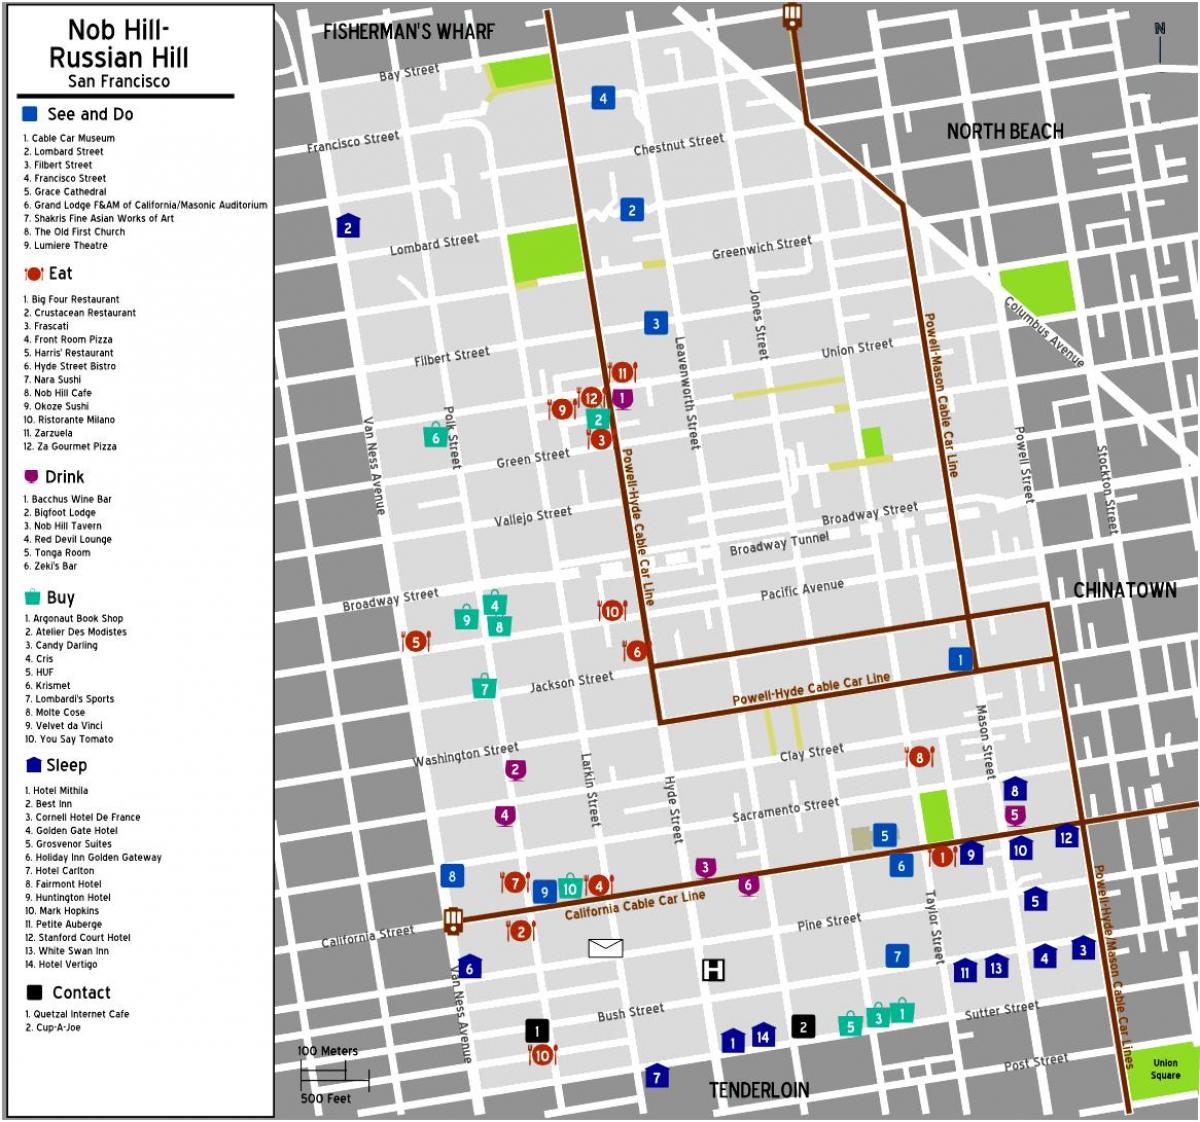 Mapa ng nob burol ng San Francisco